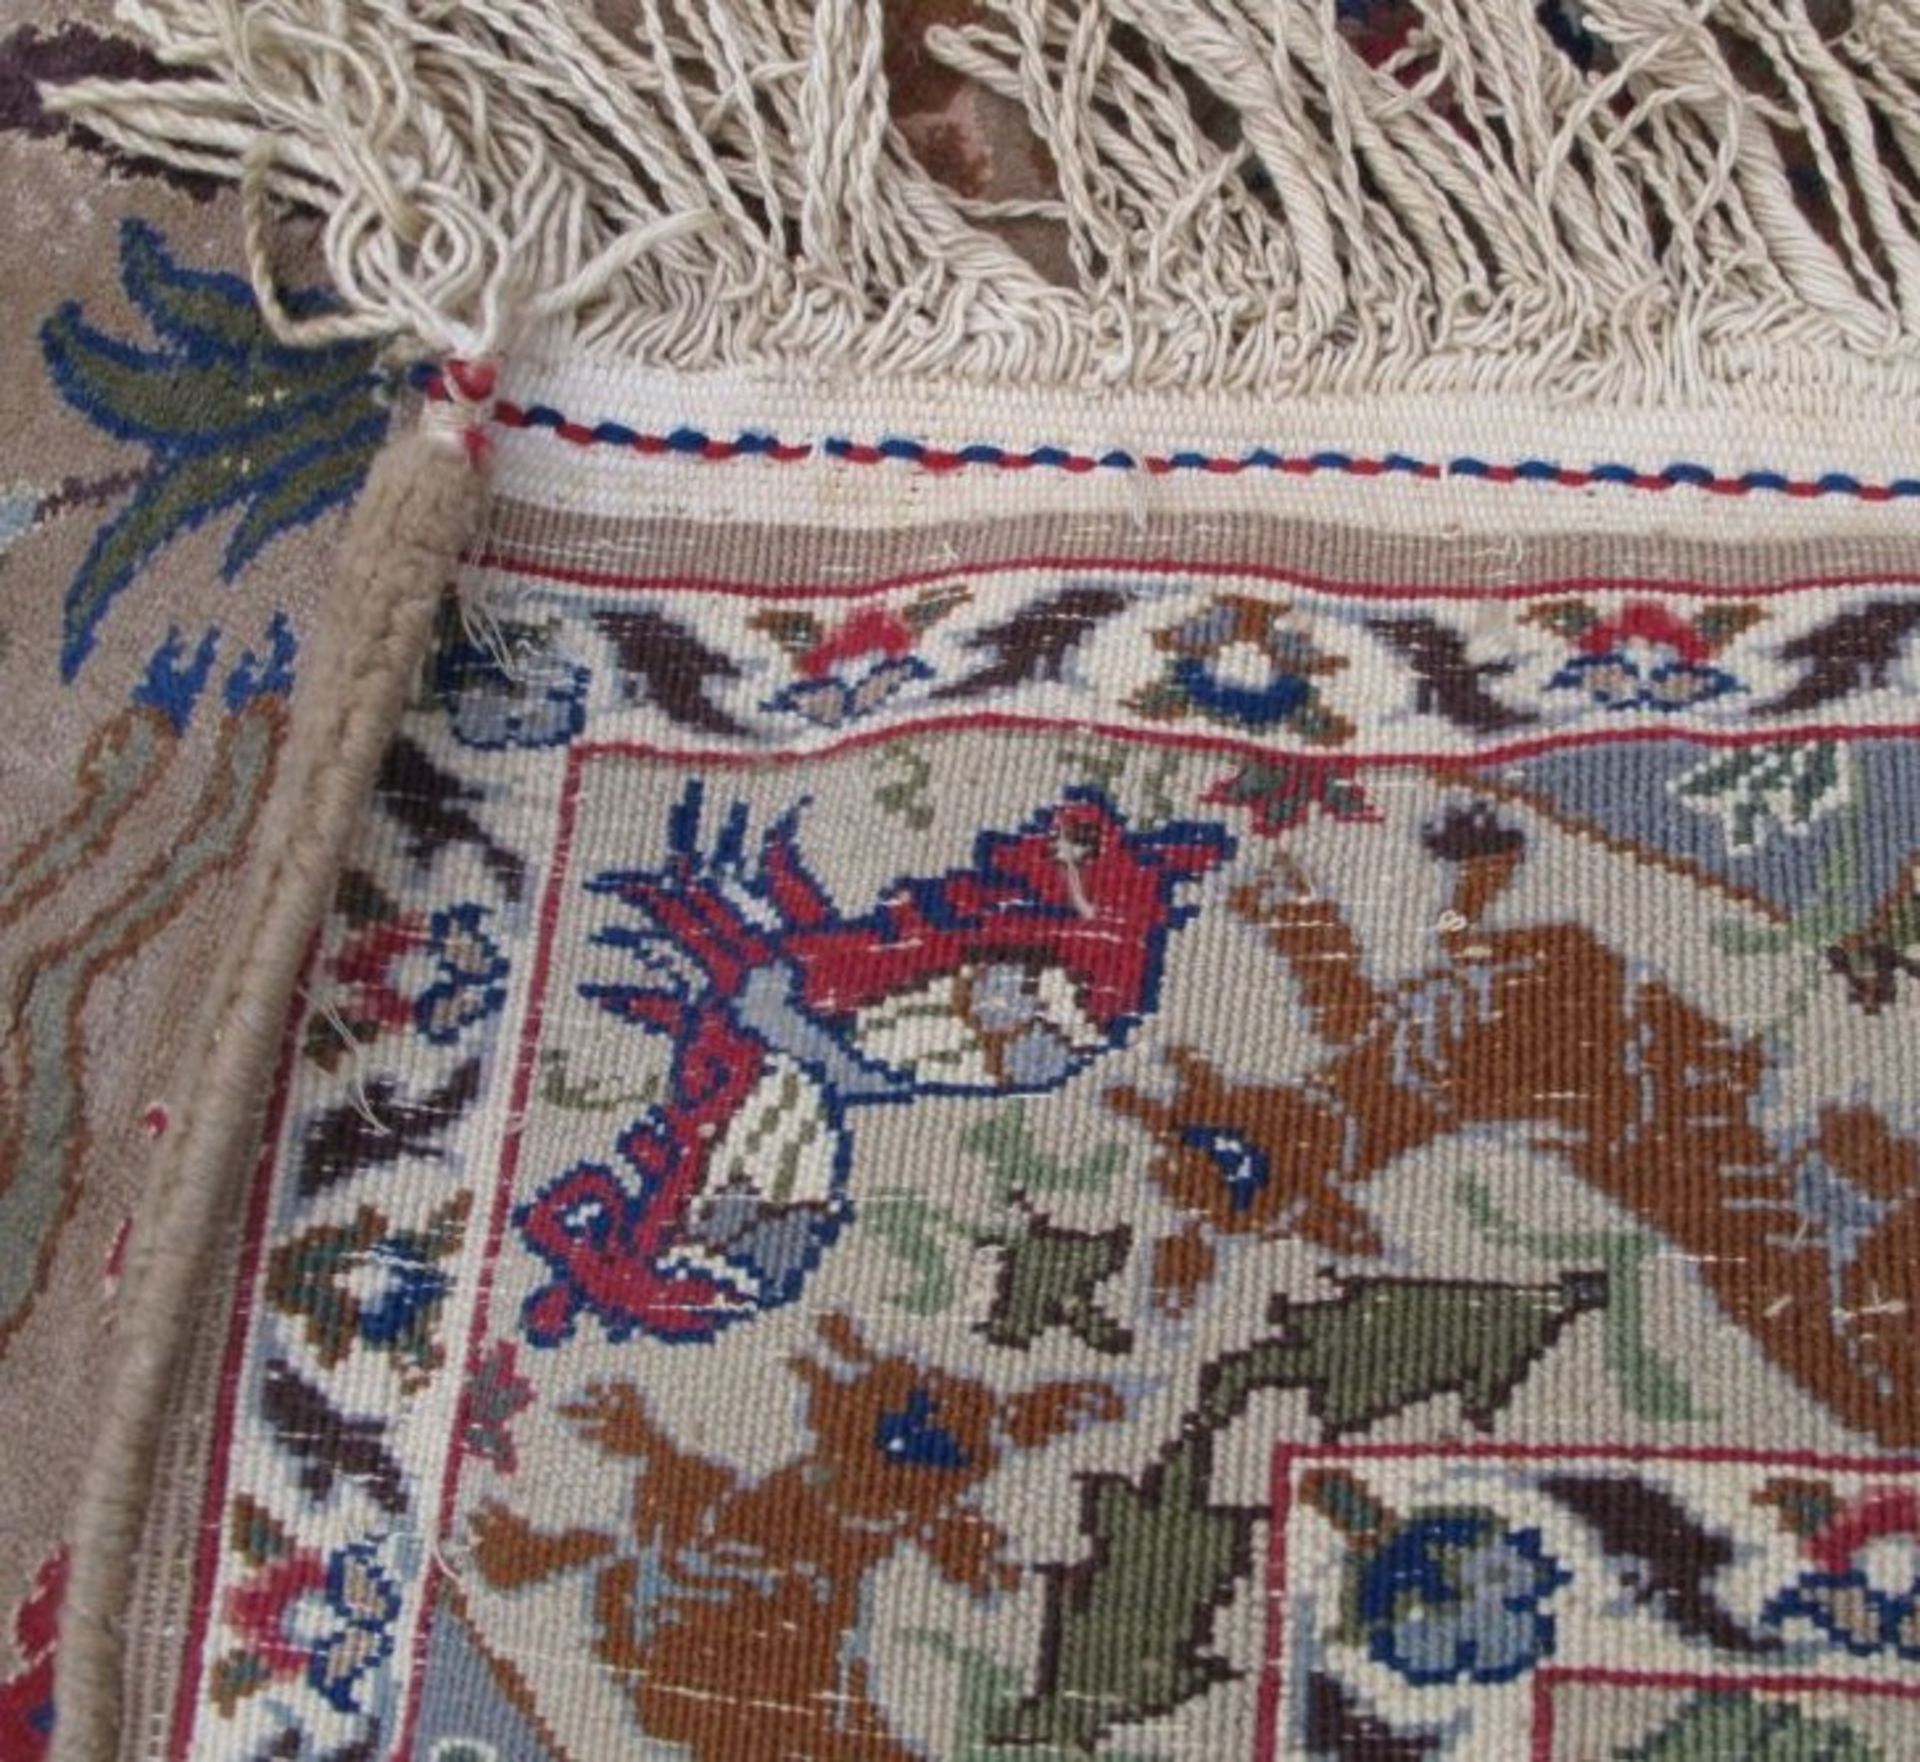 kl. Orient-Teppich mit Wilddarstellungen, 130x95 cm - Bild 4 aus 4